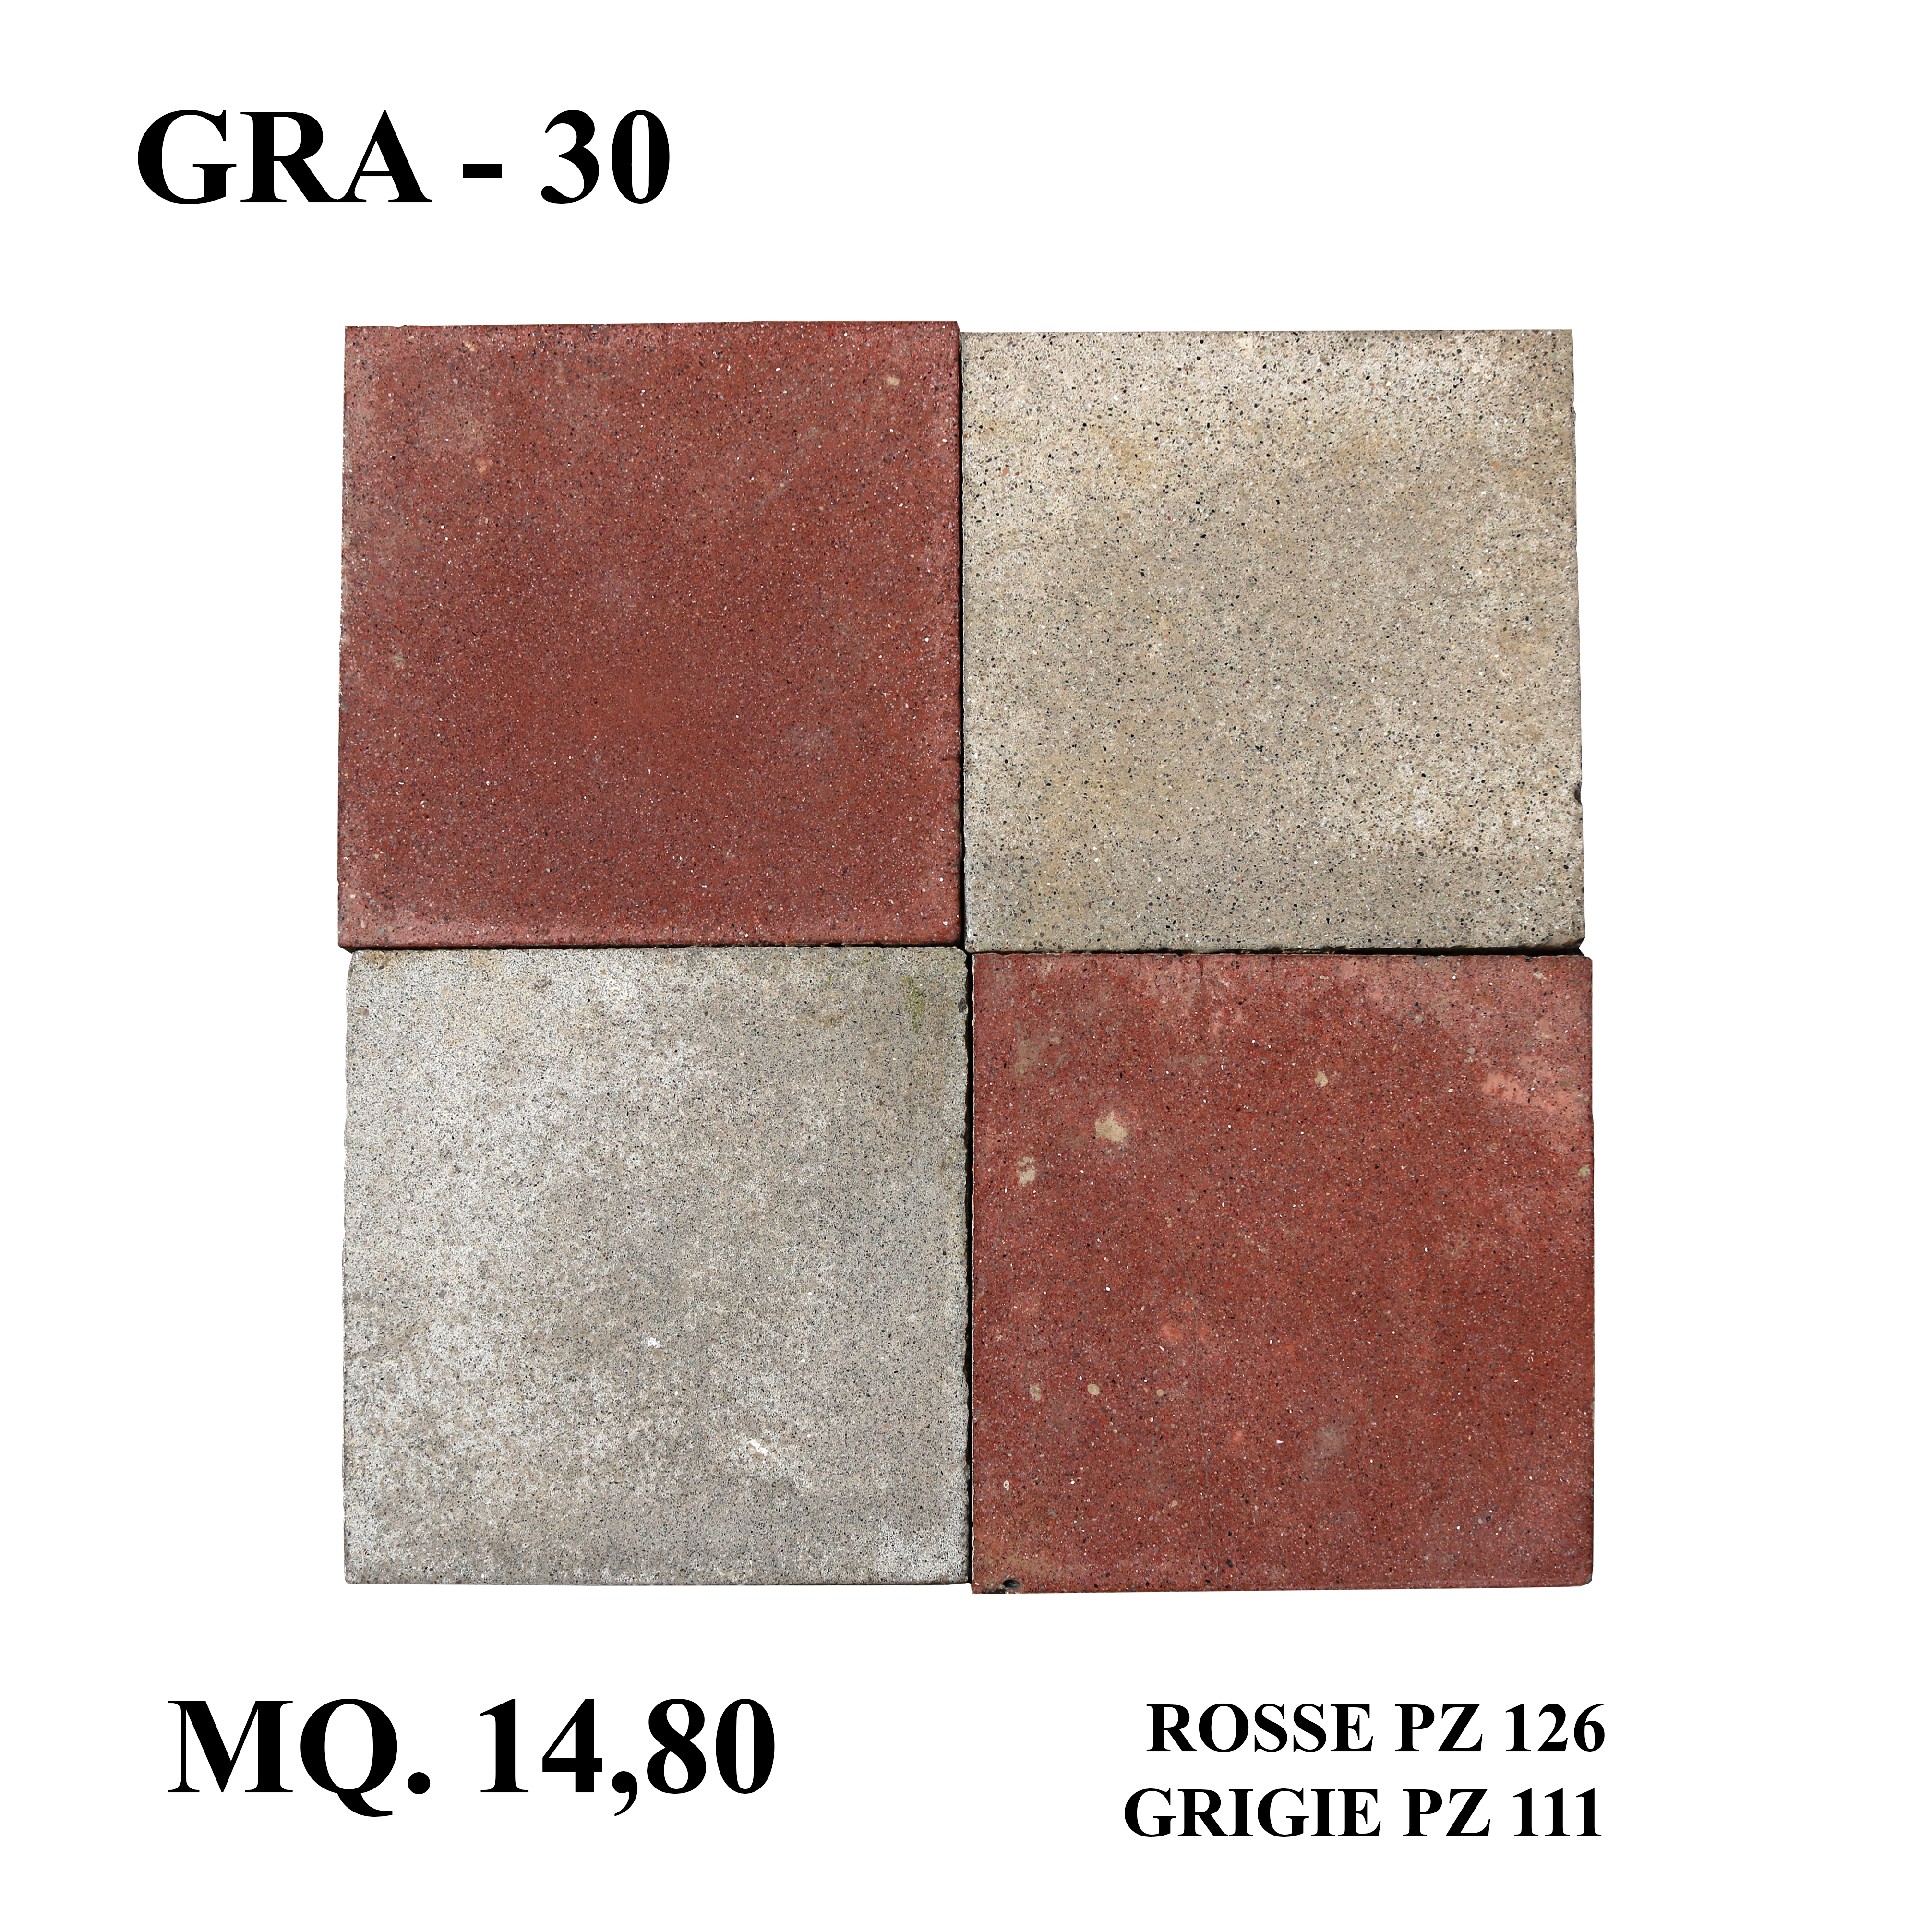 Antica pavimentazione in graniglia. cm 25x25. - 1